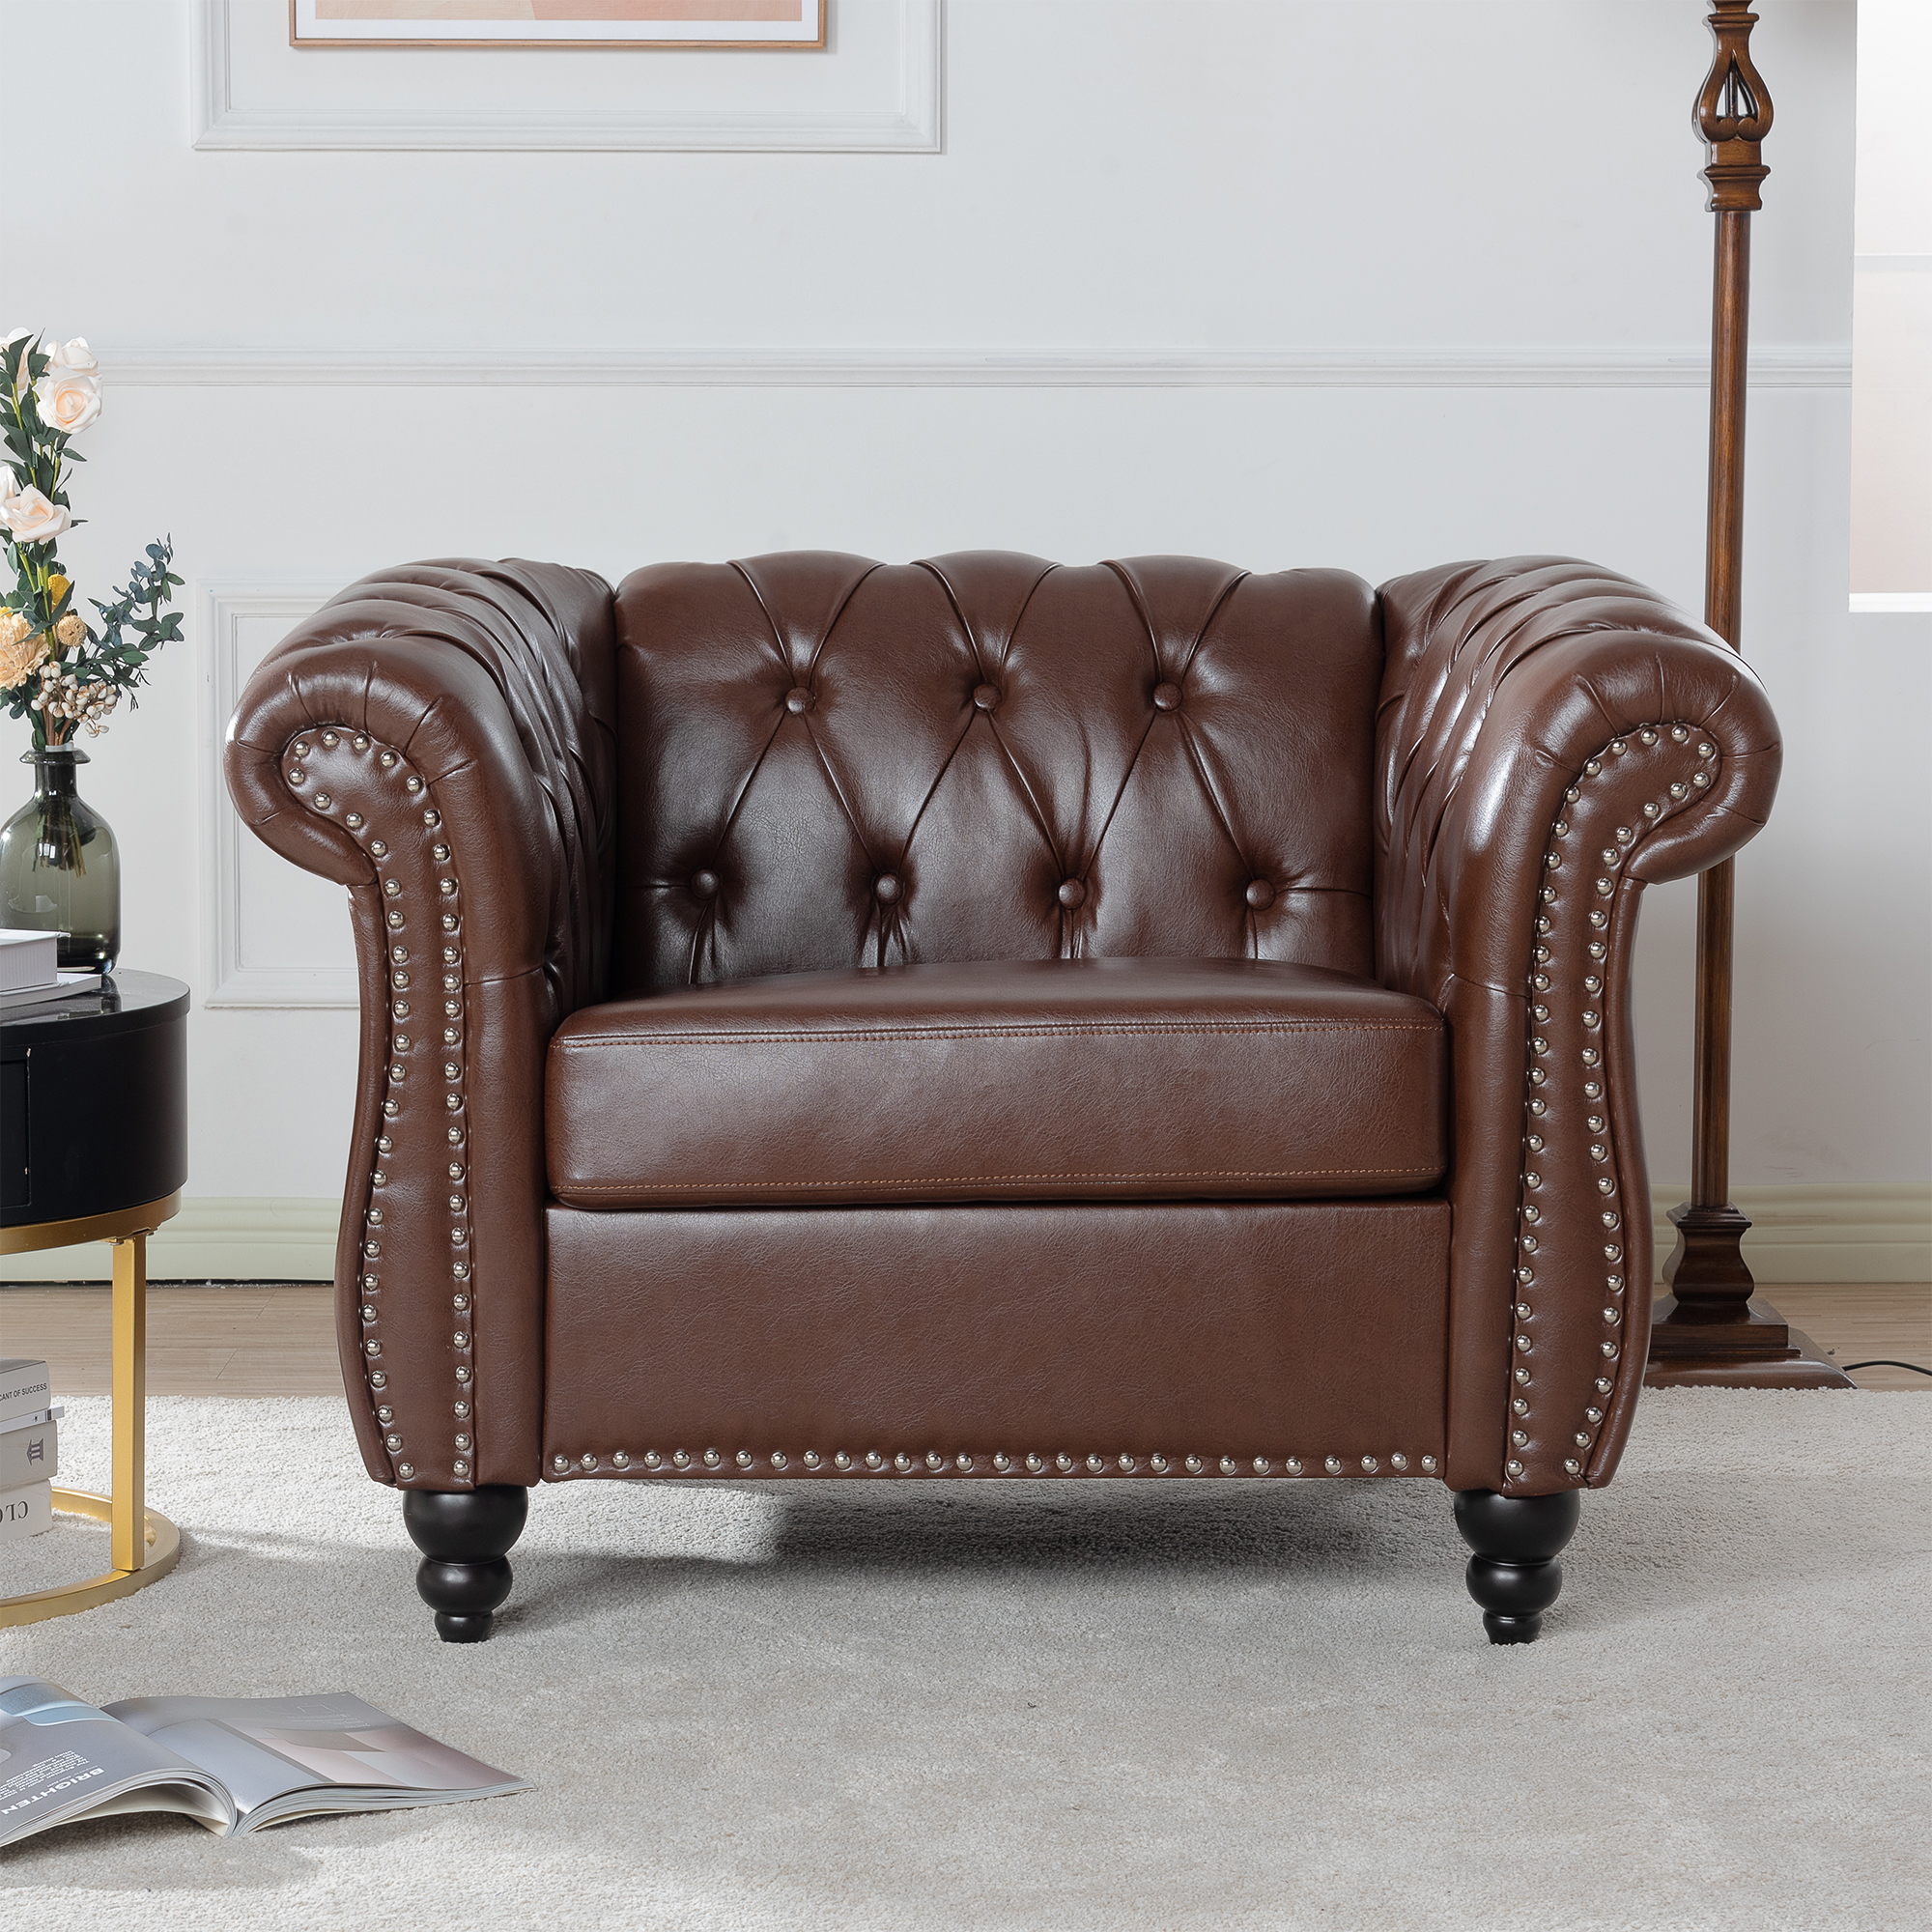 1 Seater Sofa For Living Room-CASAINC